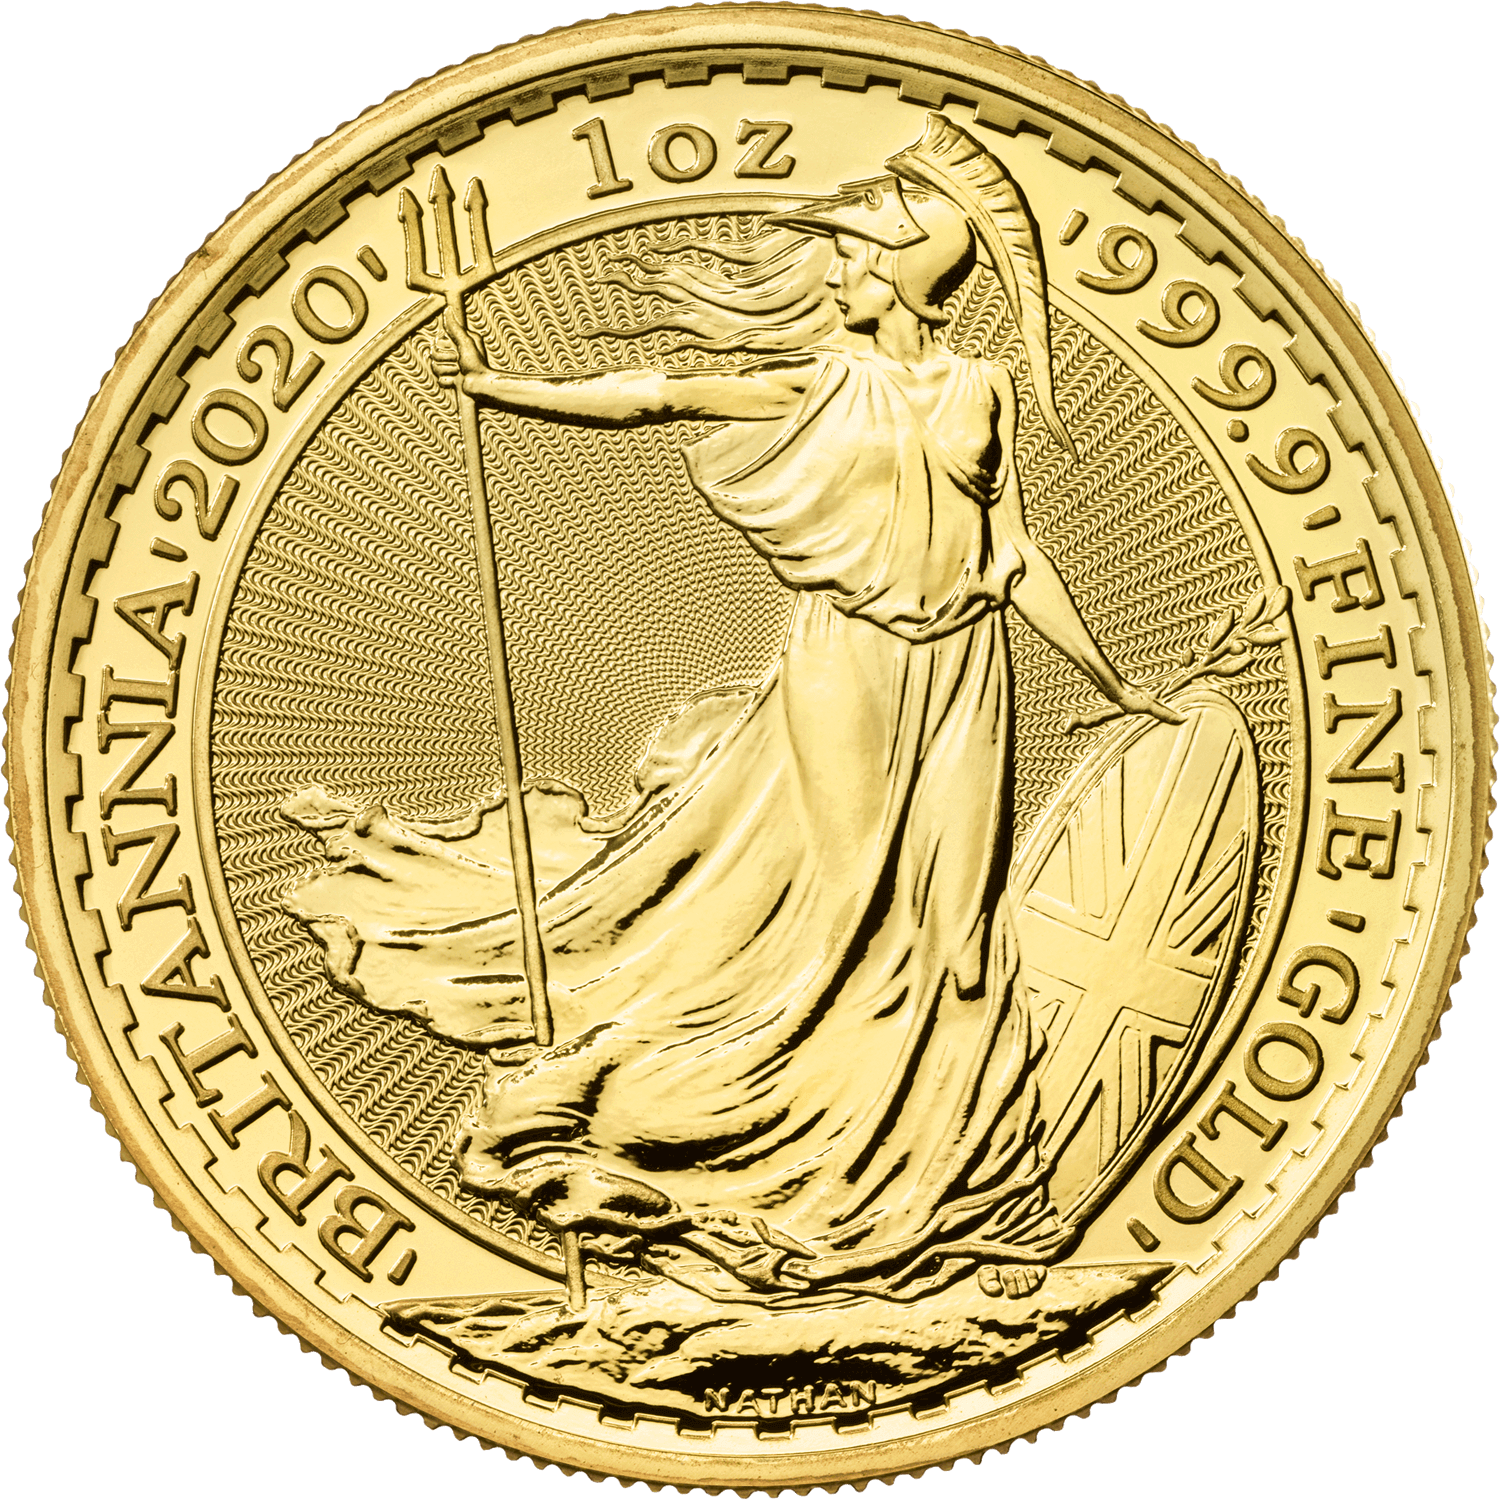 Britannia 2020 1 oz Gold Bullion Coin The Royal Mint